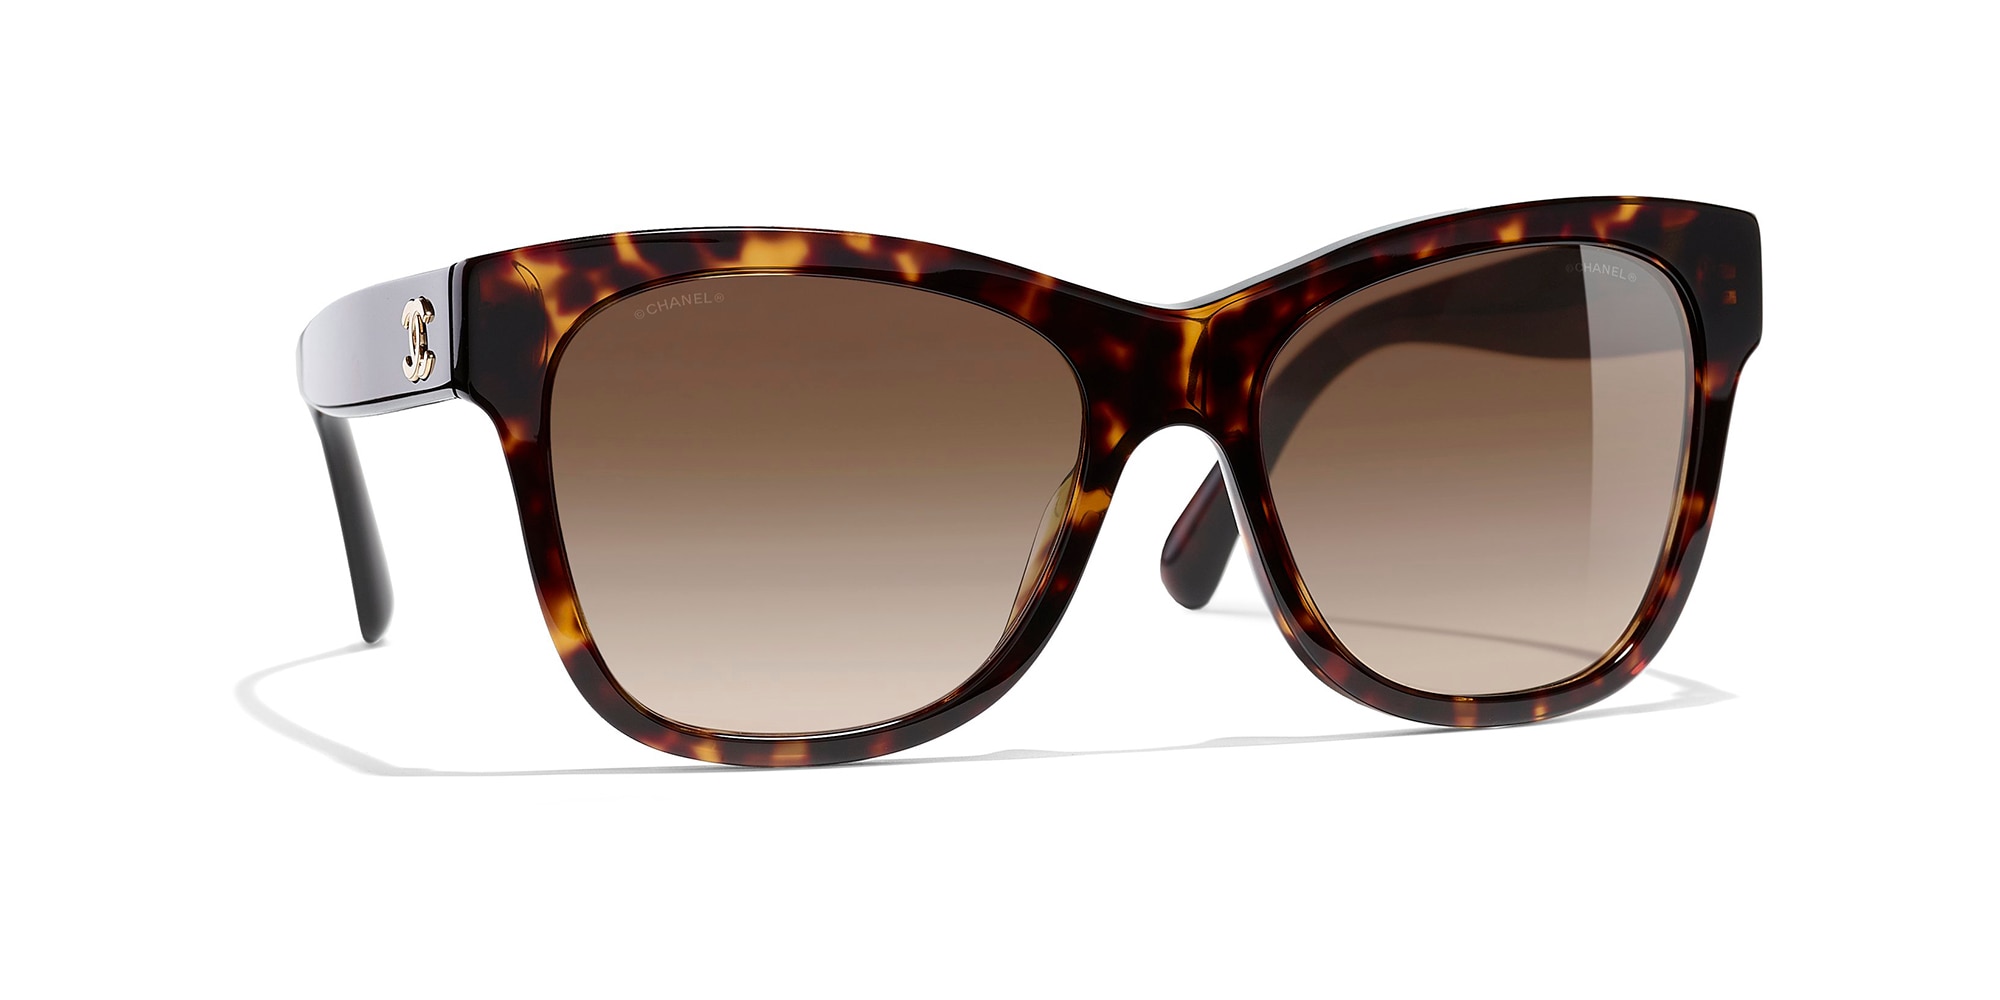 Sunglasses Chanel Brown in Plastic  27710363